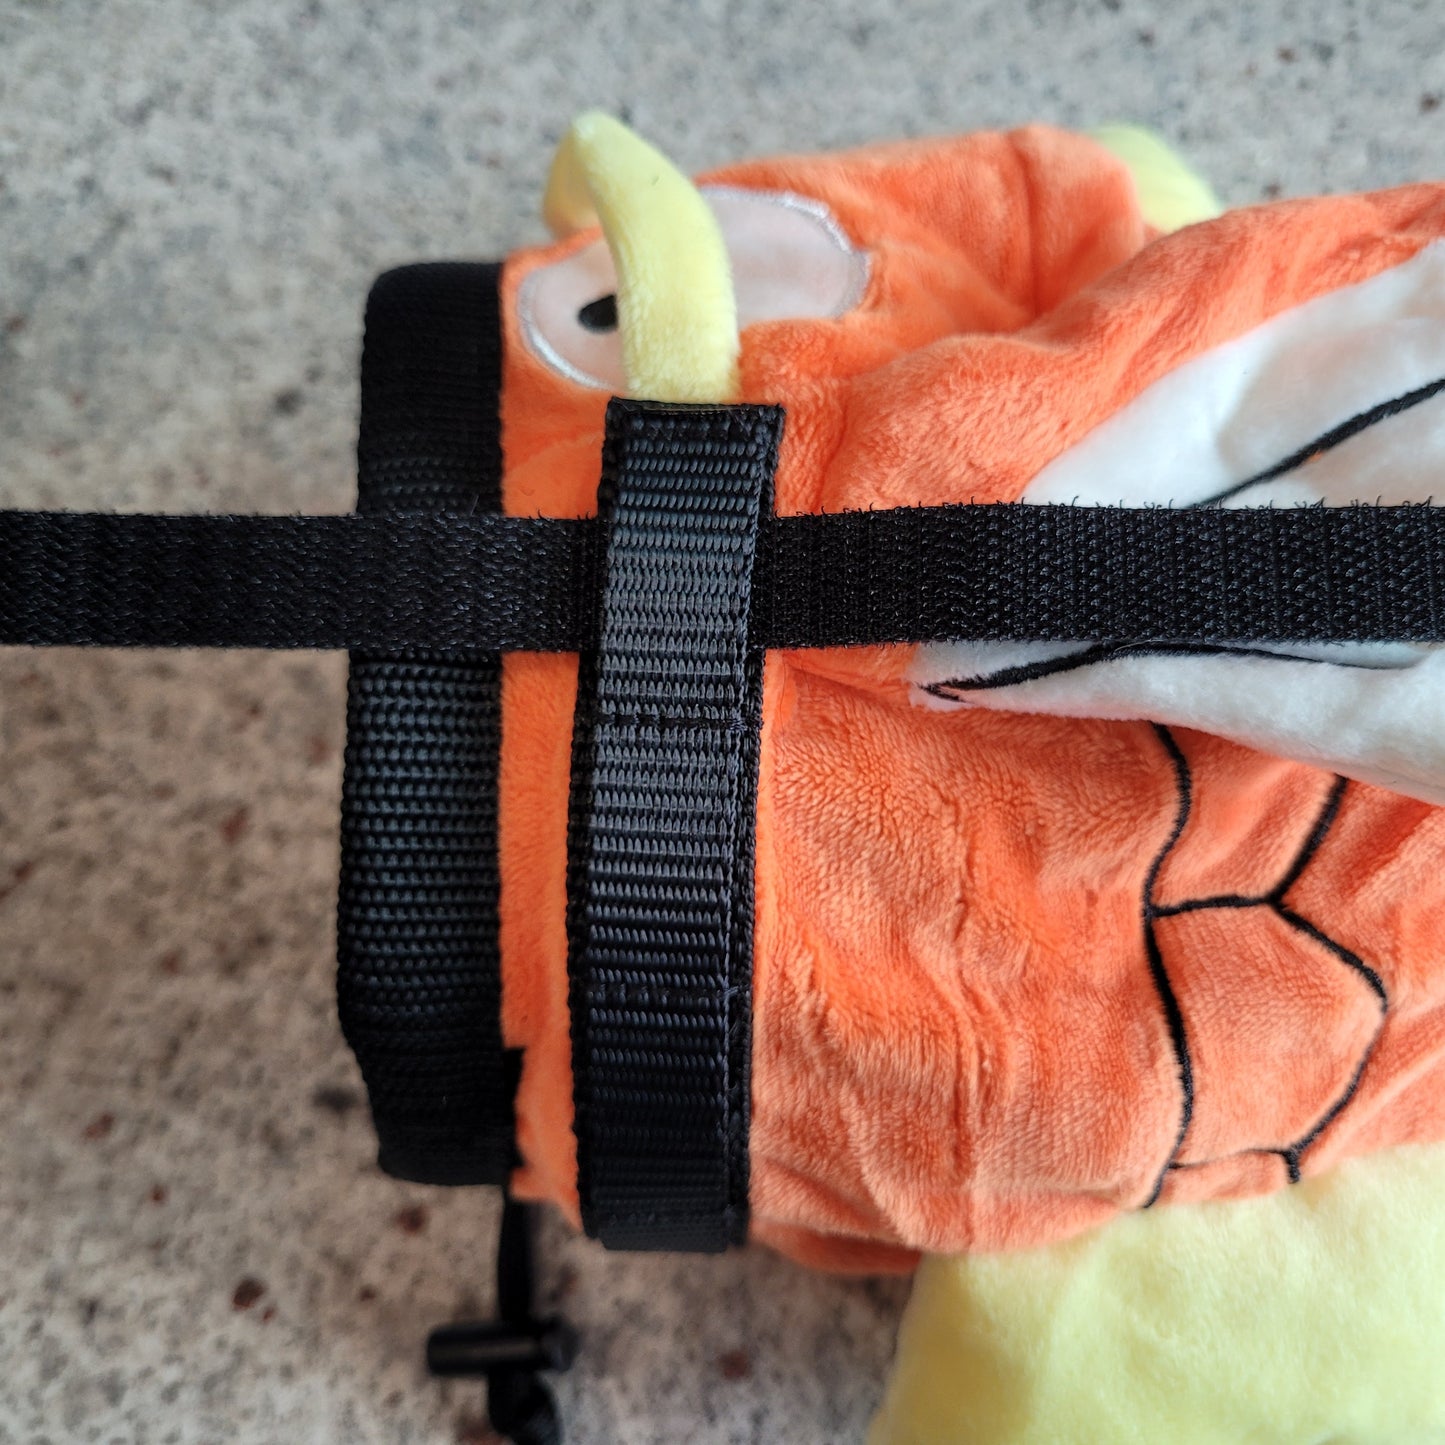 Koi Fish Awesome Bike Bag